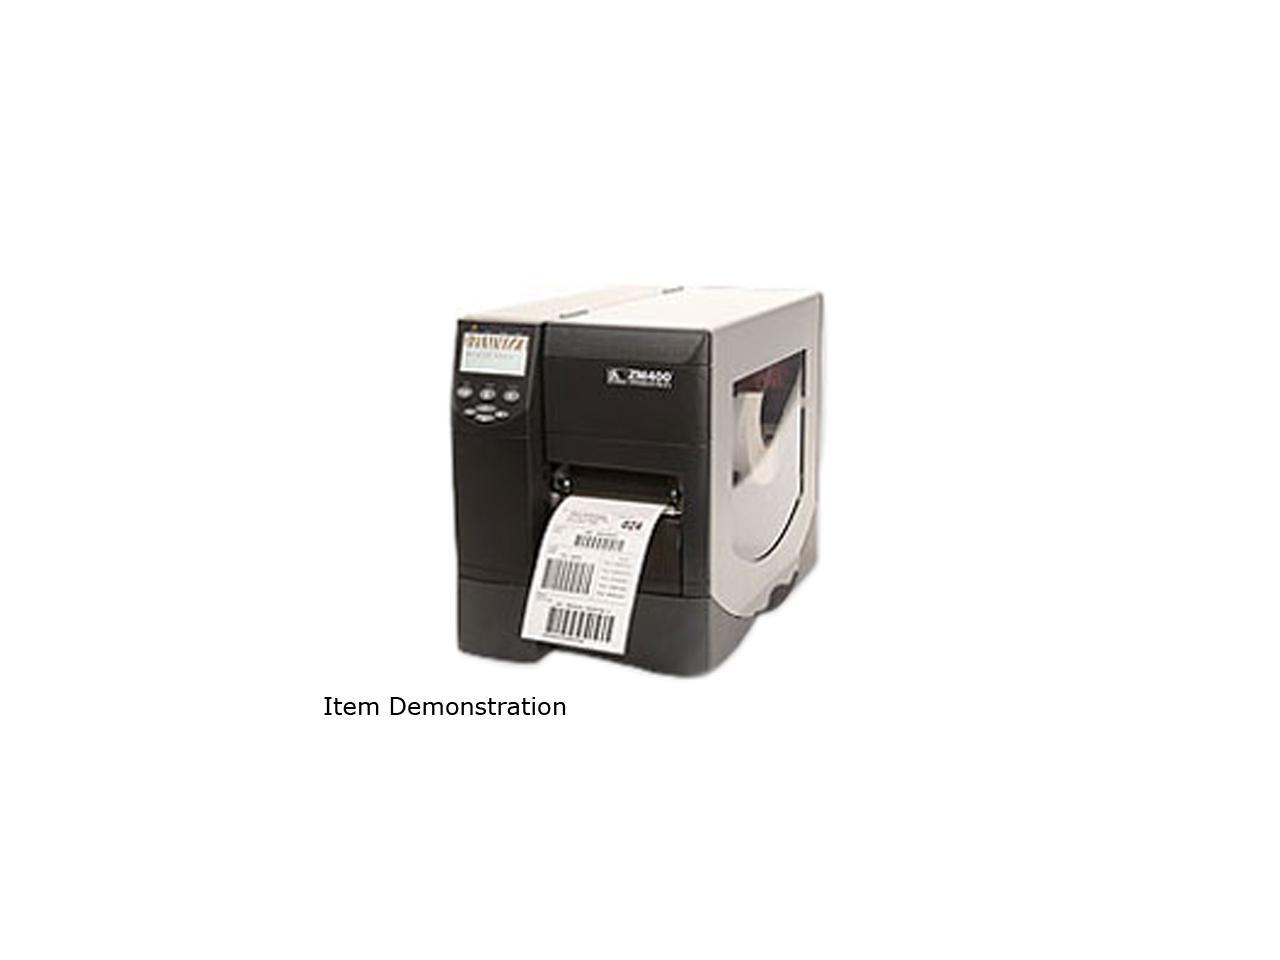 Zebra Zm400 Zm400 2001 0700t Label Printer 0715